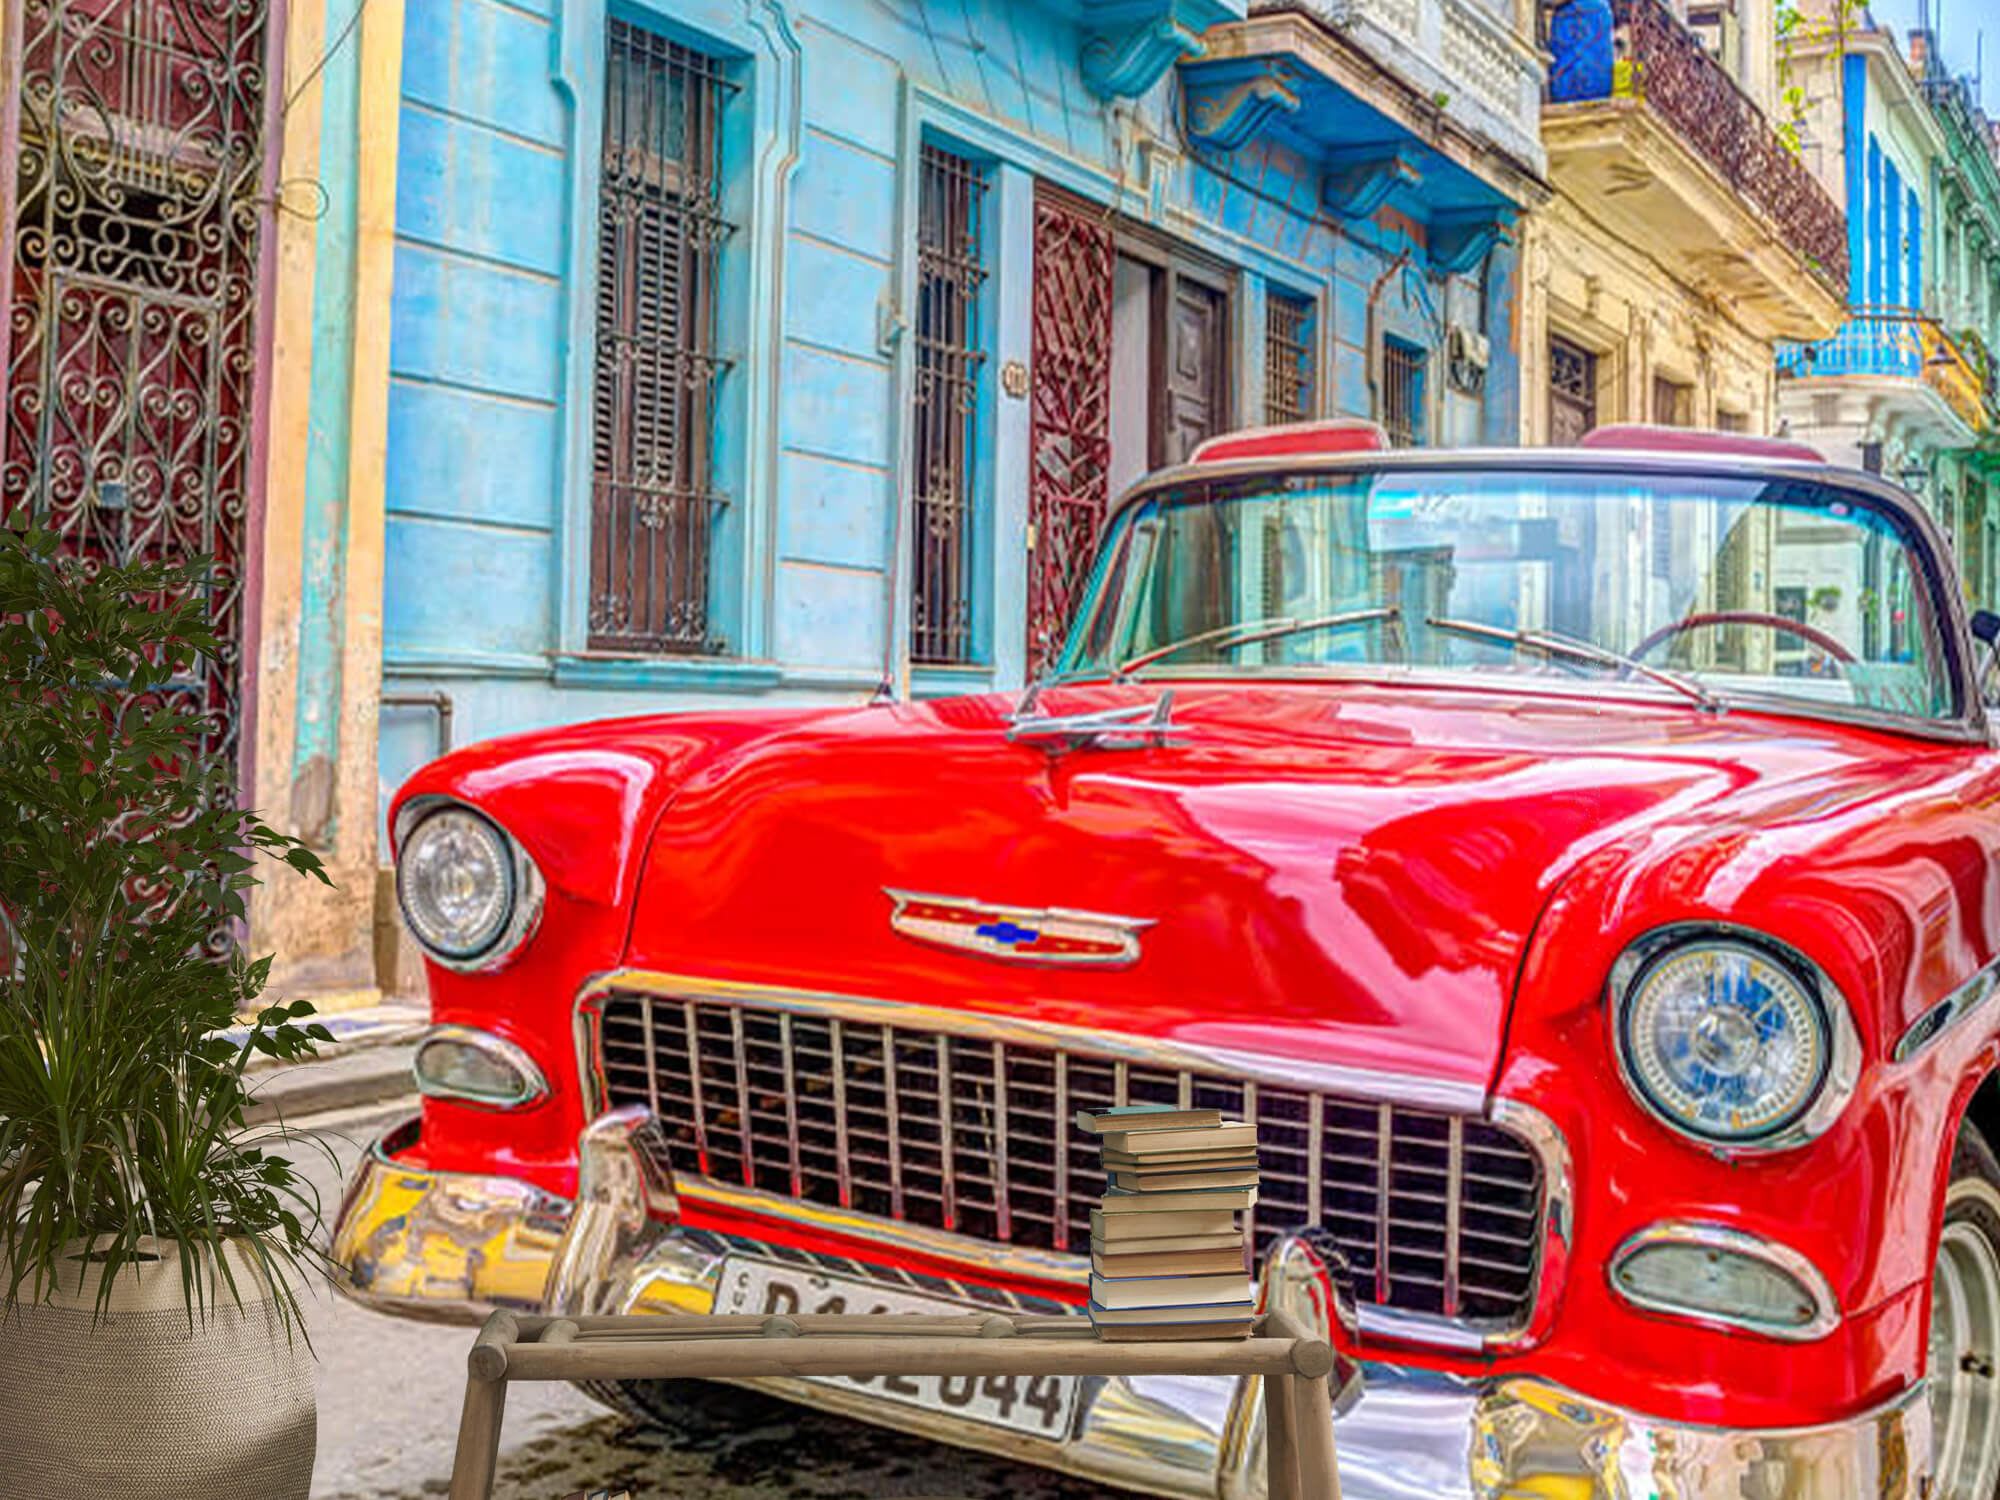  Samochód zabytkowy w Hawanie 13